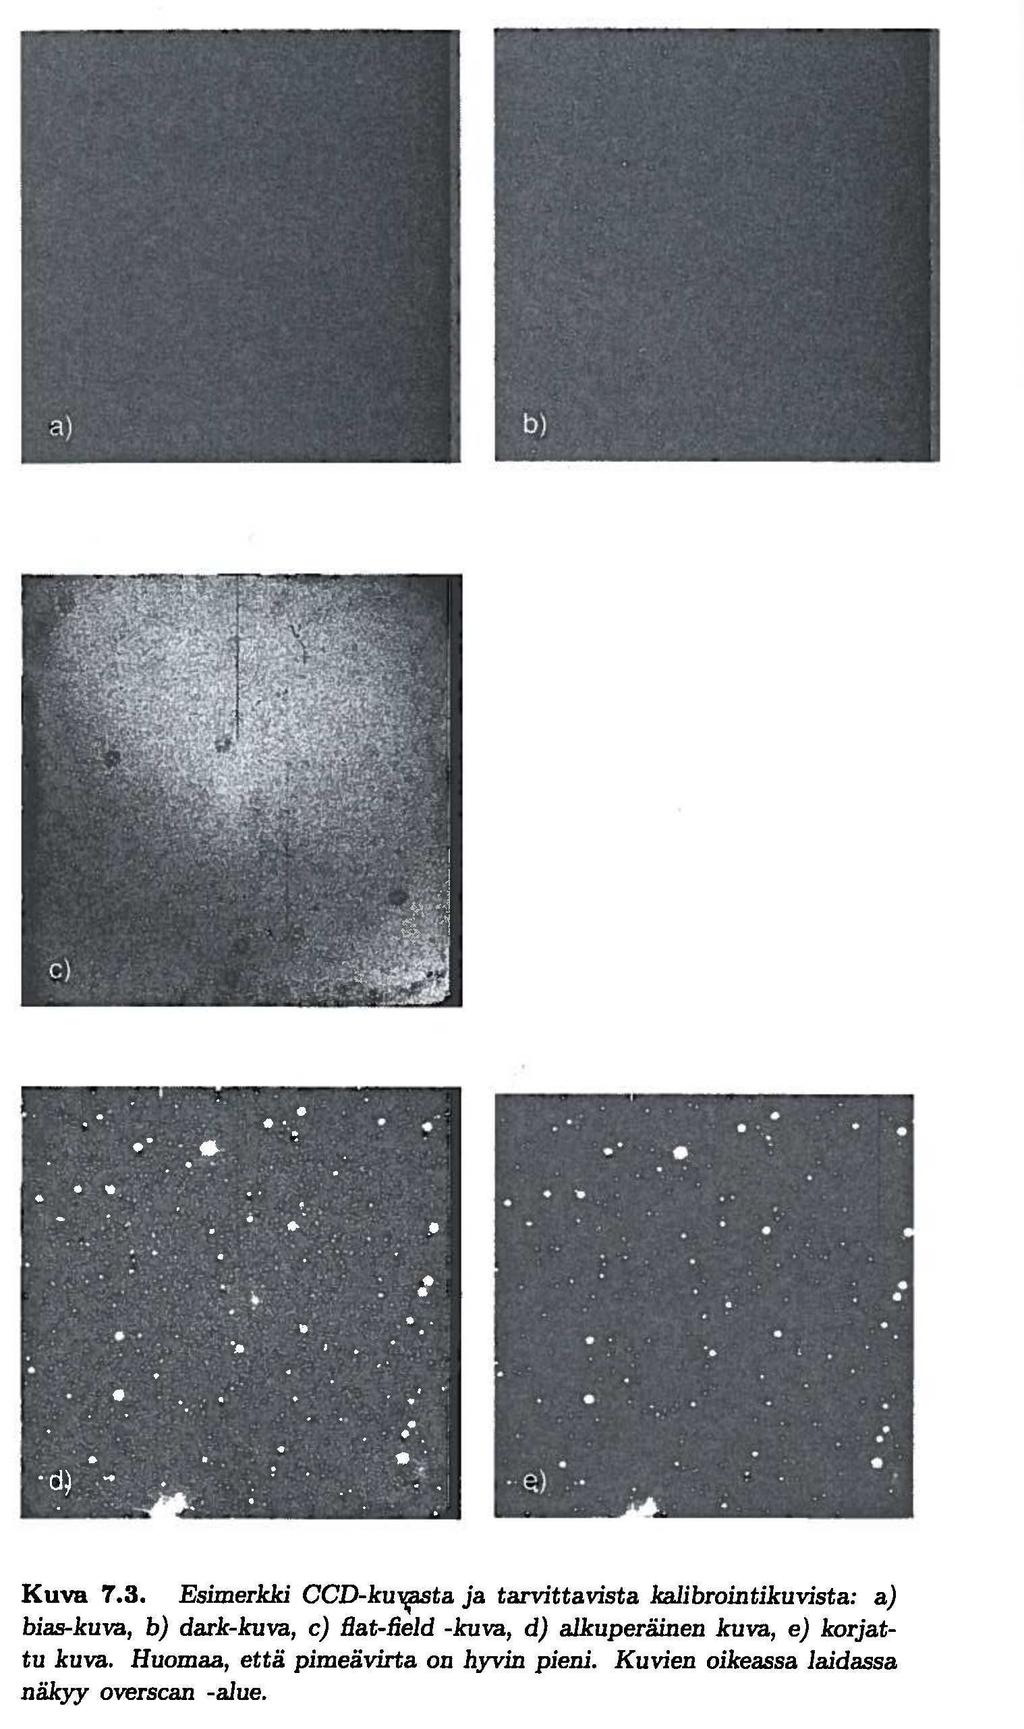 CCD-kuvien reduktio =havaitsevan tähtitieteiljän arkipäivää Raakakuvista vähennettävä BIAS = detektorin perustaso DARK = pimeä virta Kuva on korjattava FLATFIELD-kuvalla pikseleiden erilaisen